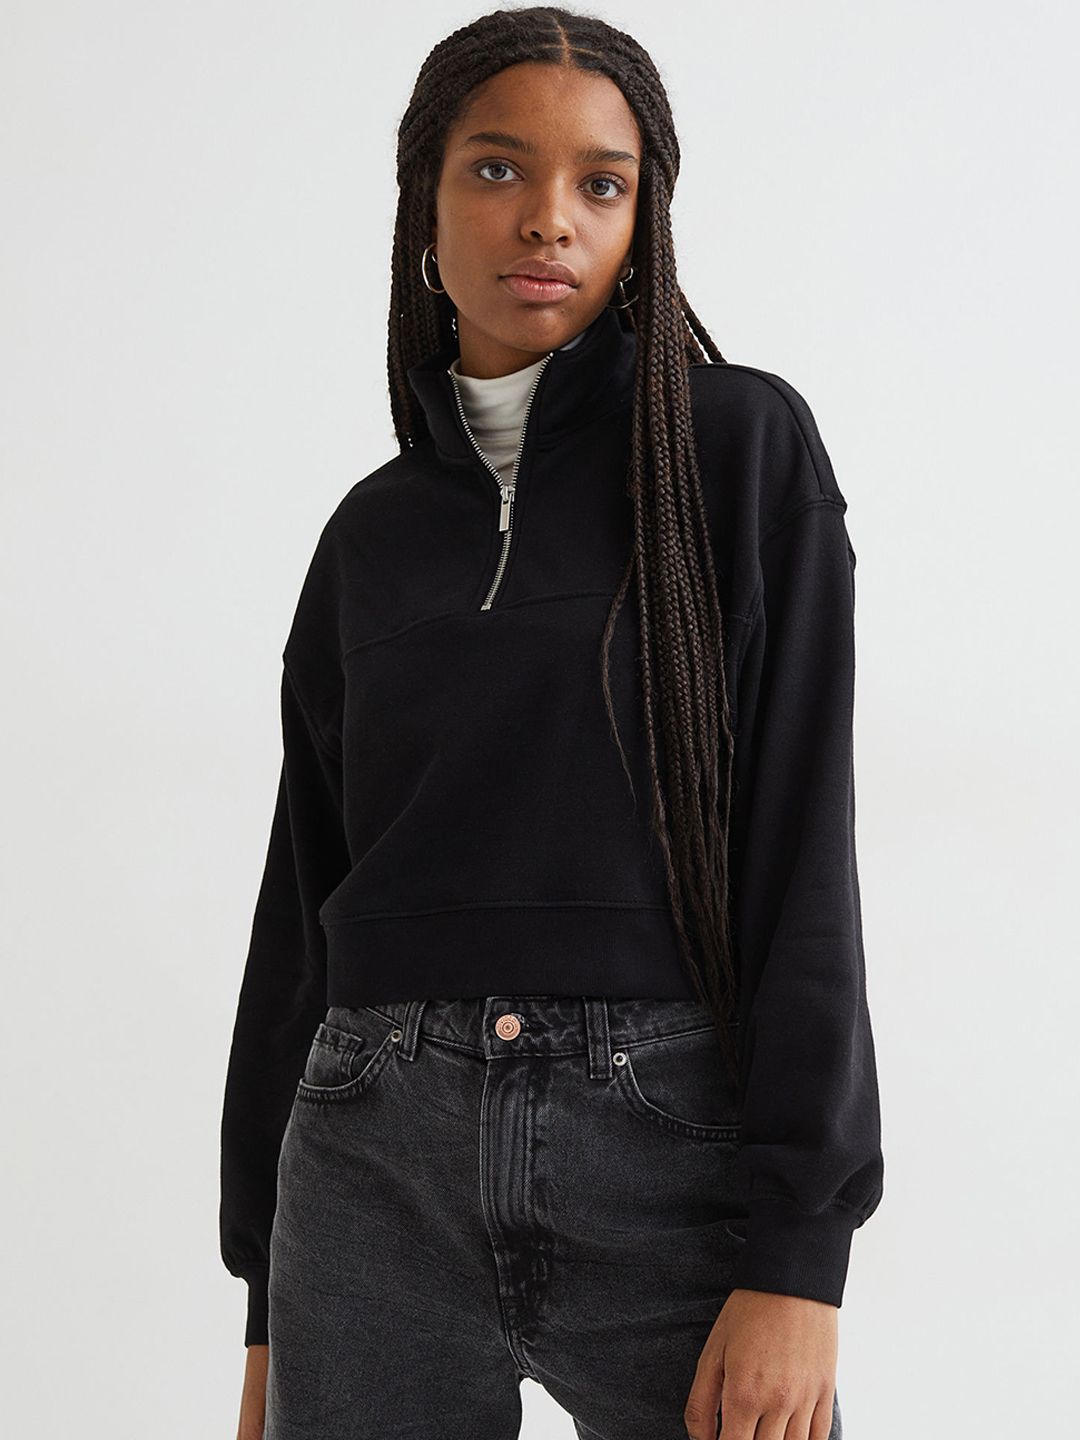 H&M Women Black Zip-Top Sweatshirt Price in India